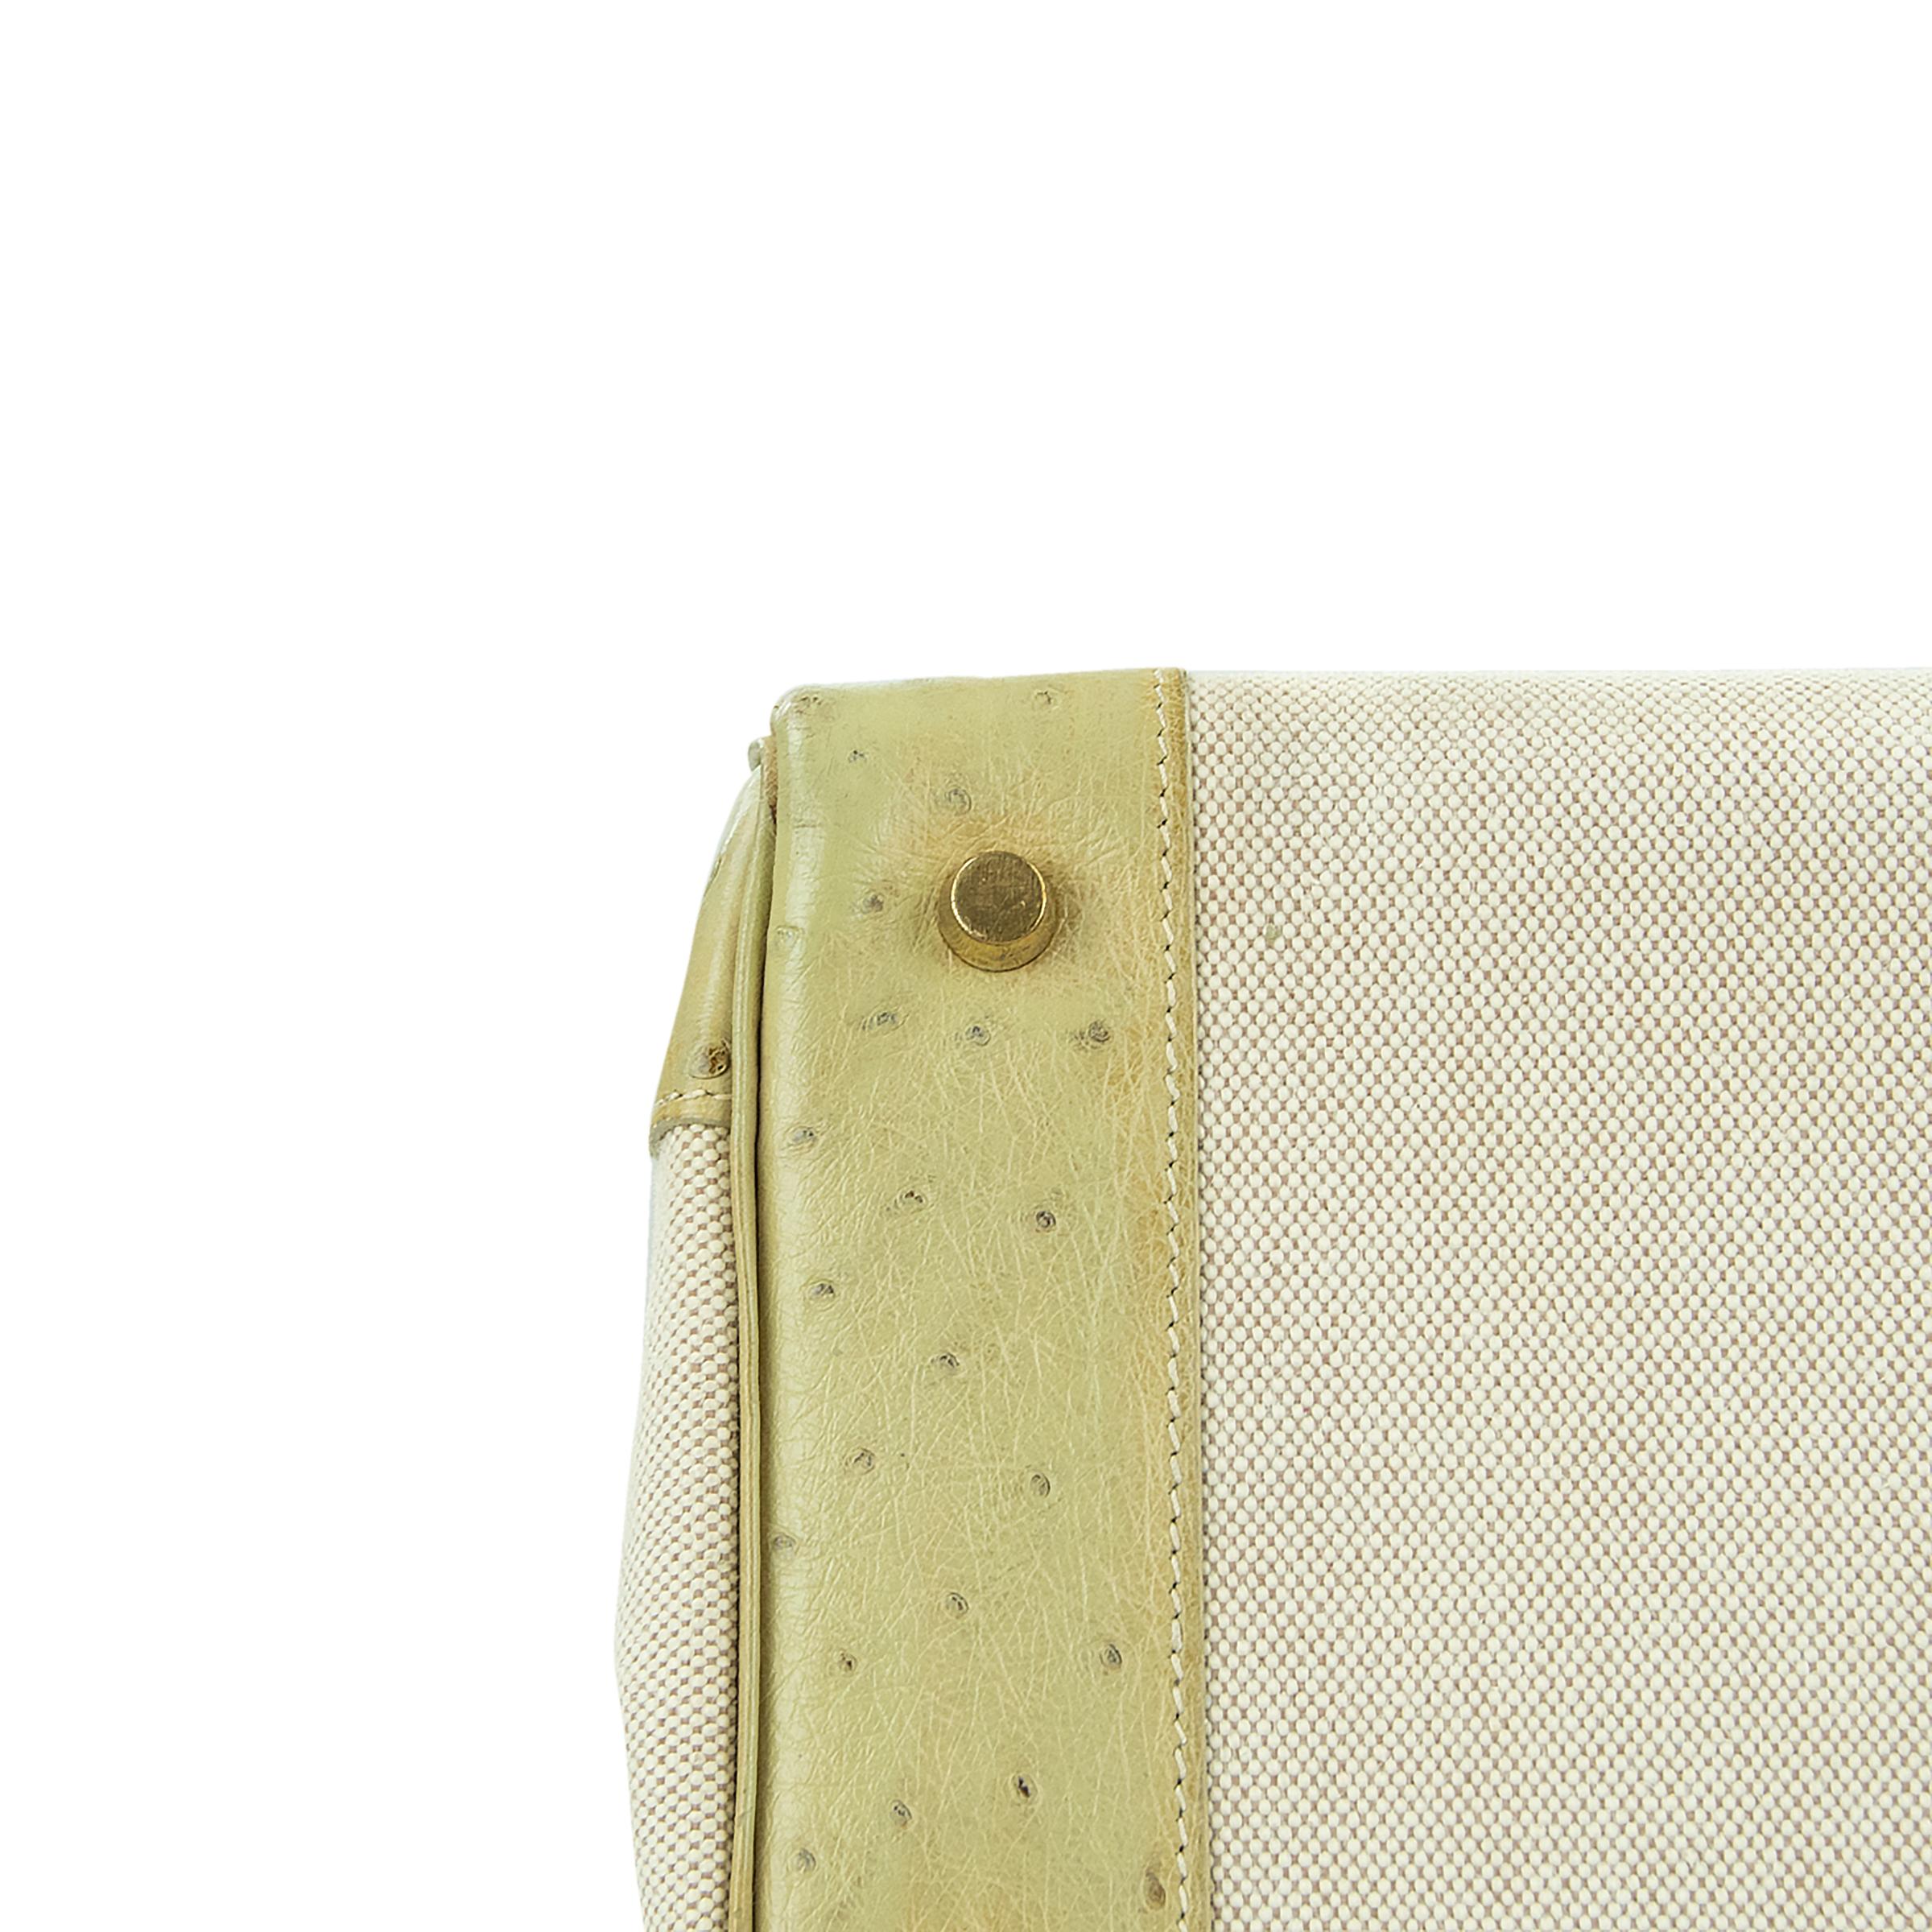 Hermes Birkin Bag 35cm Toile and Blanc Casse Ostrich GHW (Pre-Owned) für Damen oder Herren im Angebot